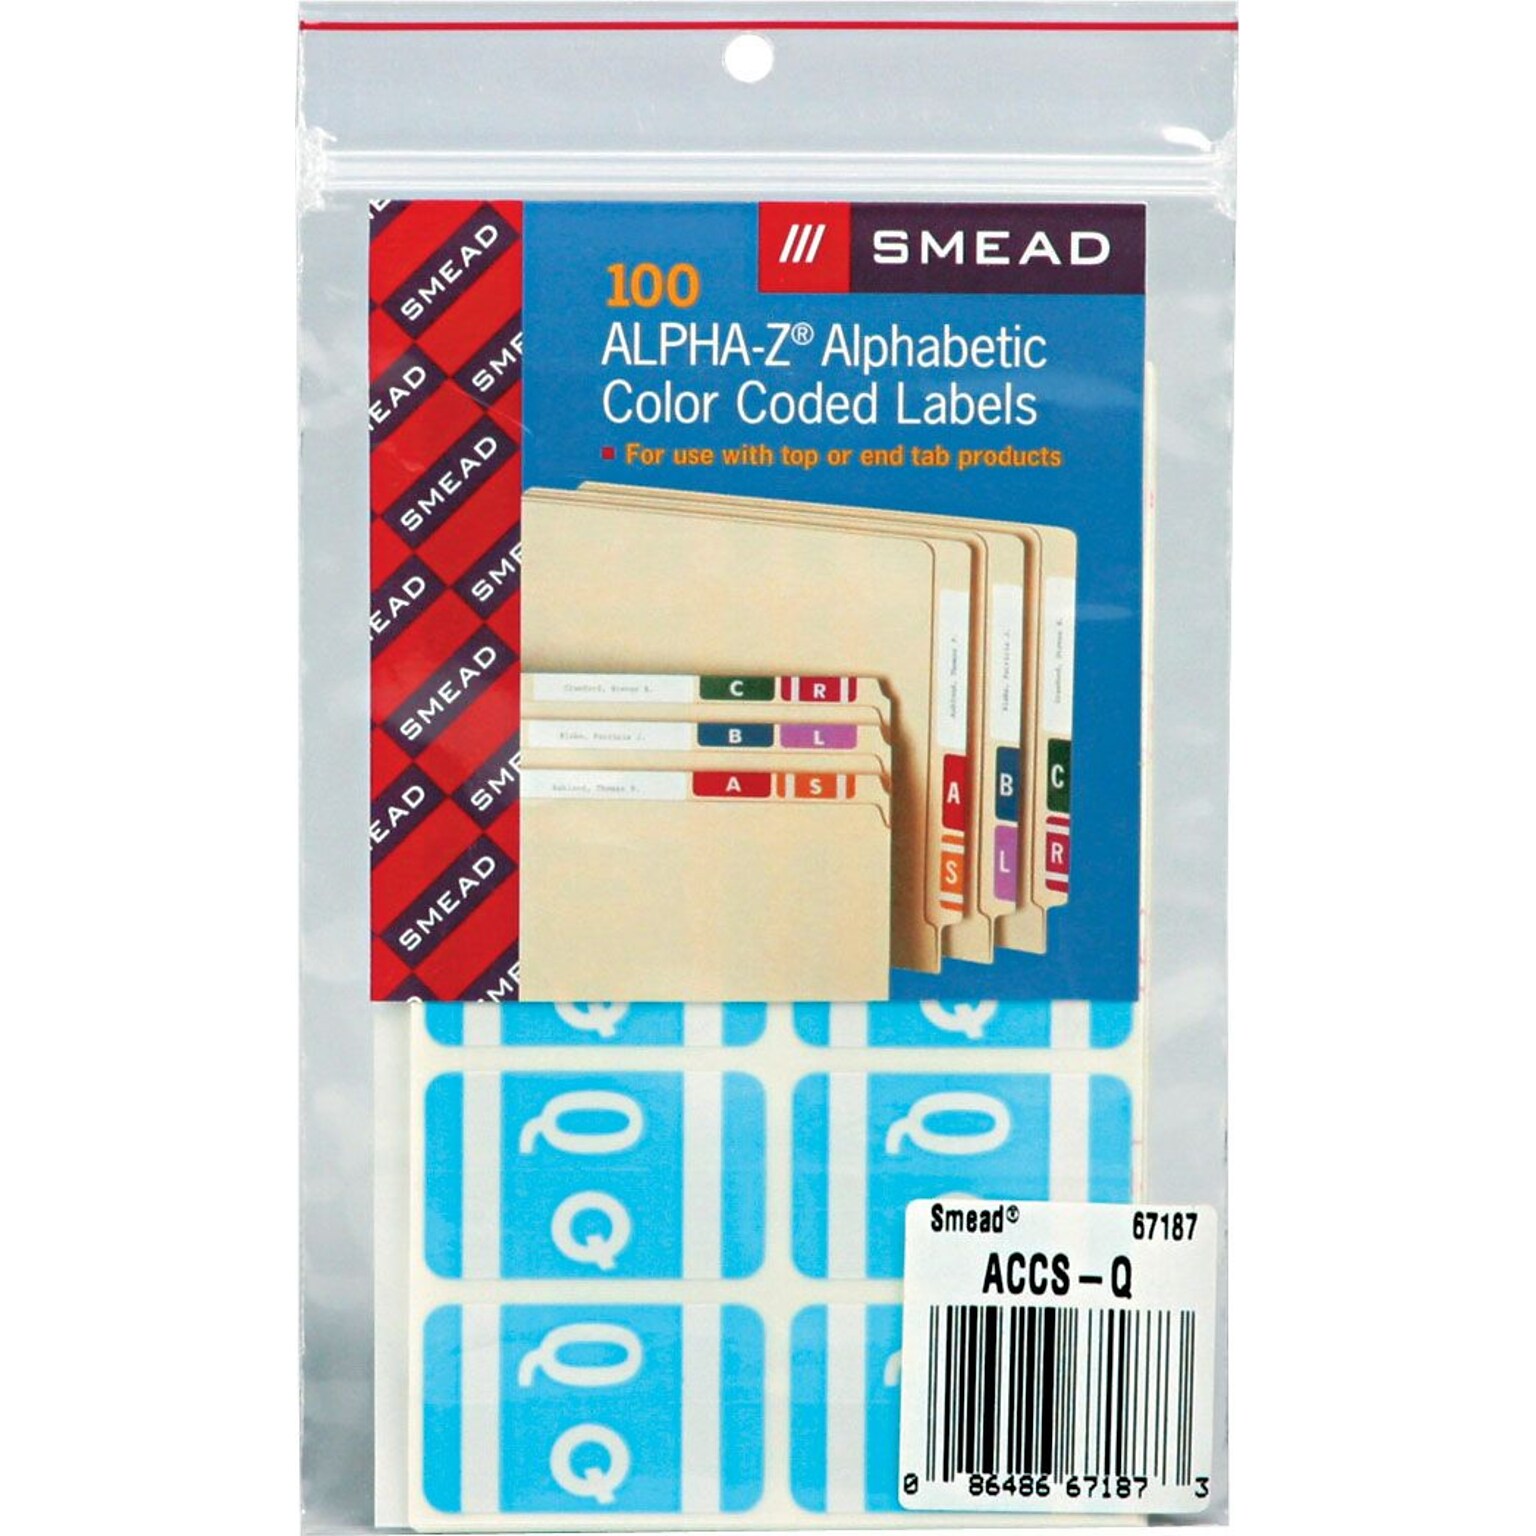 Smead AlphaZ ACCS Color-Coded Alphabetic Labels, Q, Light Blue, 100/Pack (67187)